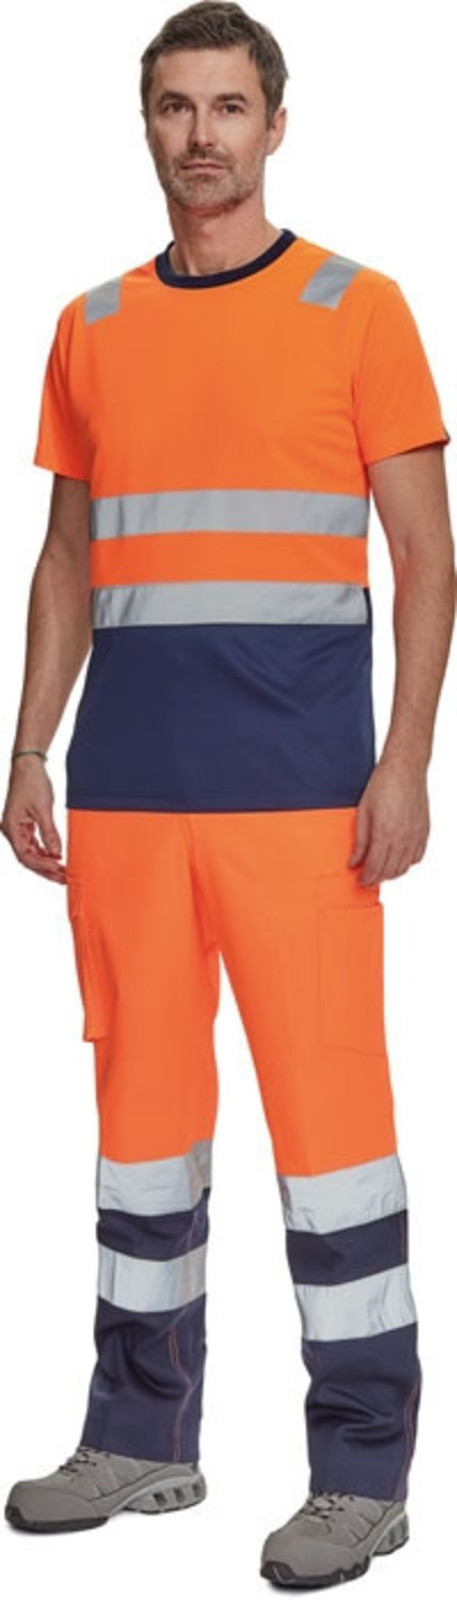 Reflexné tričko Cerva Monzon HV - veľkosť: 5XL, farba: oranžová/navy